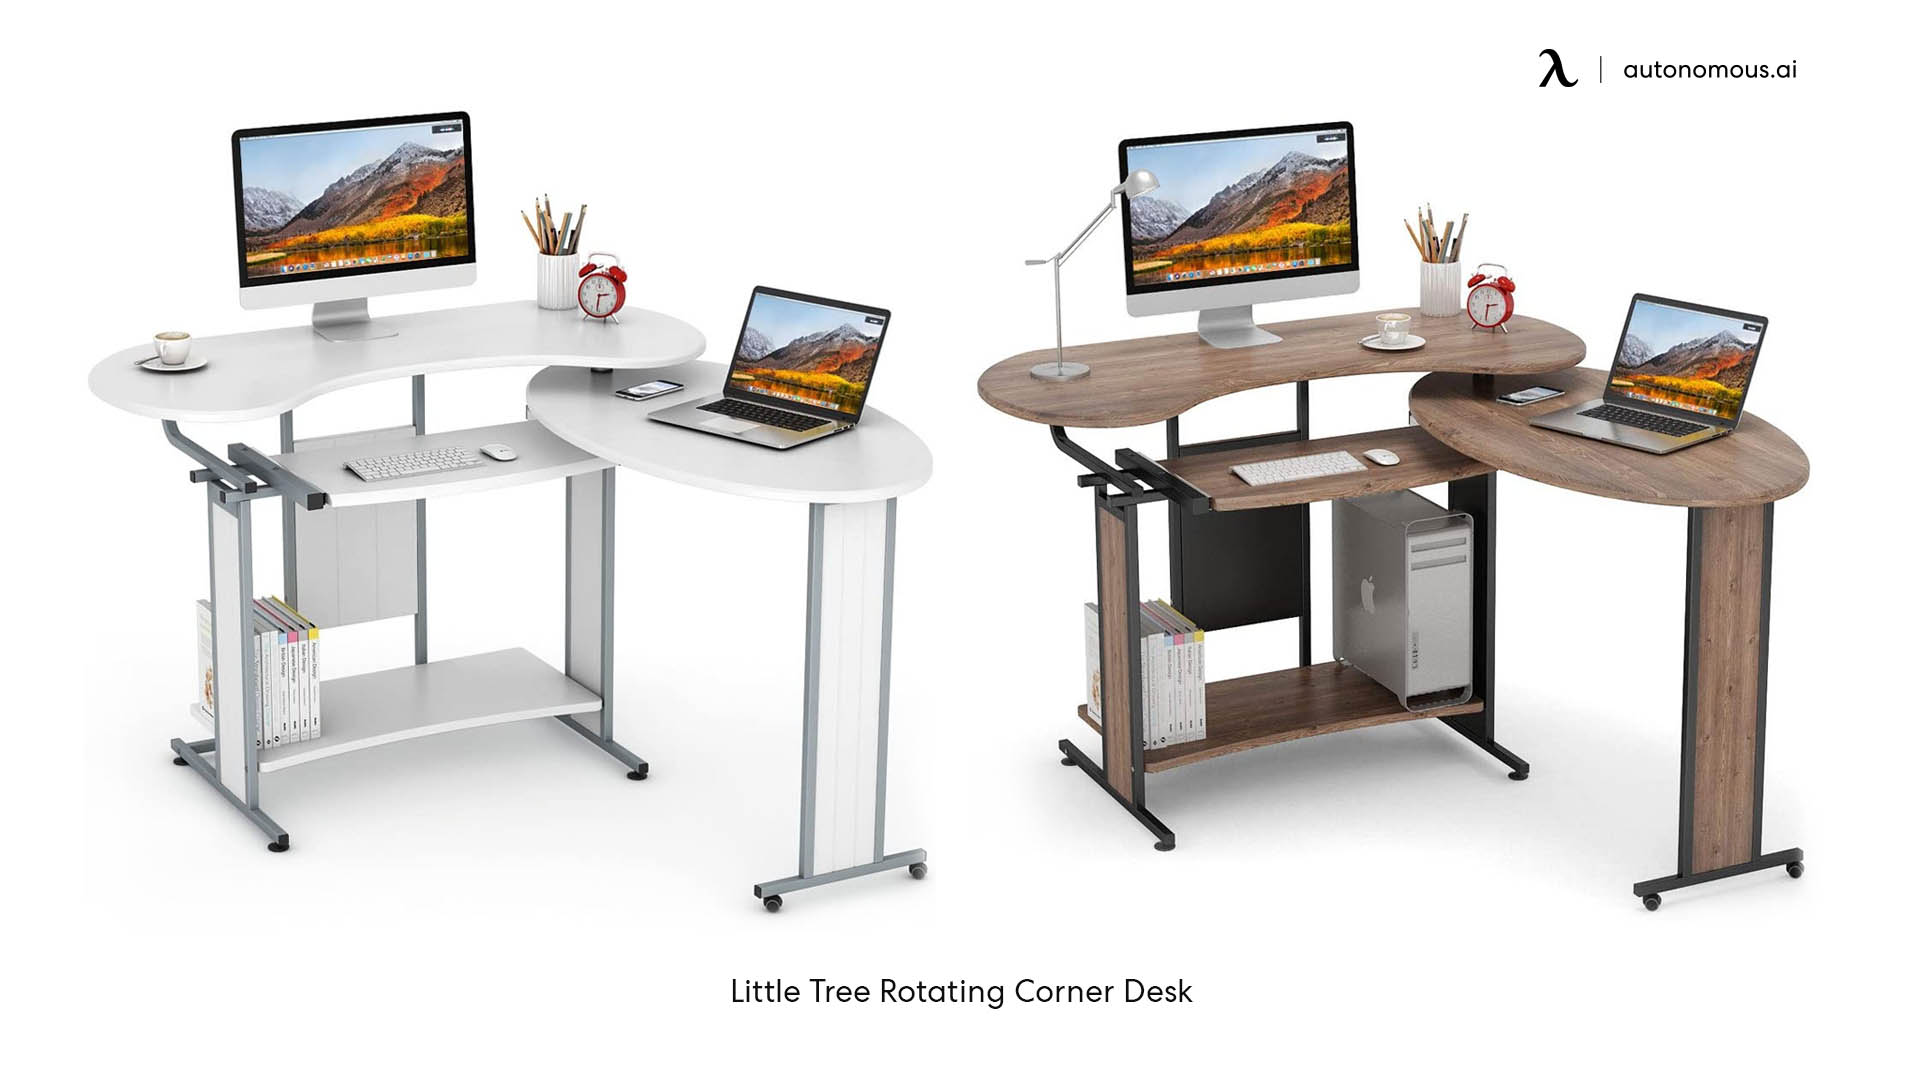 LITTLE TREE L-Shaped Computer Desk, Rotating Corner Desk & Modern Office Study Workstation